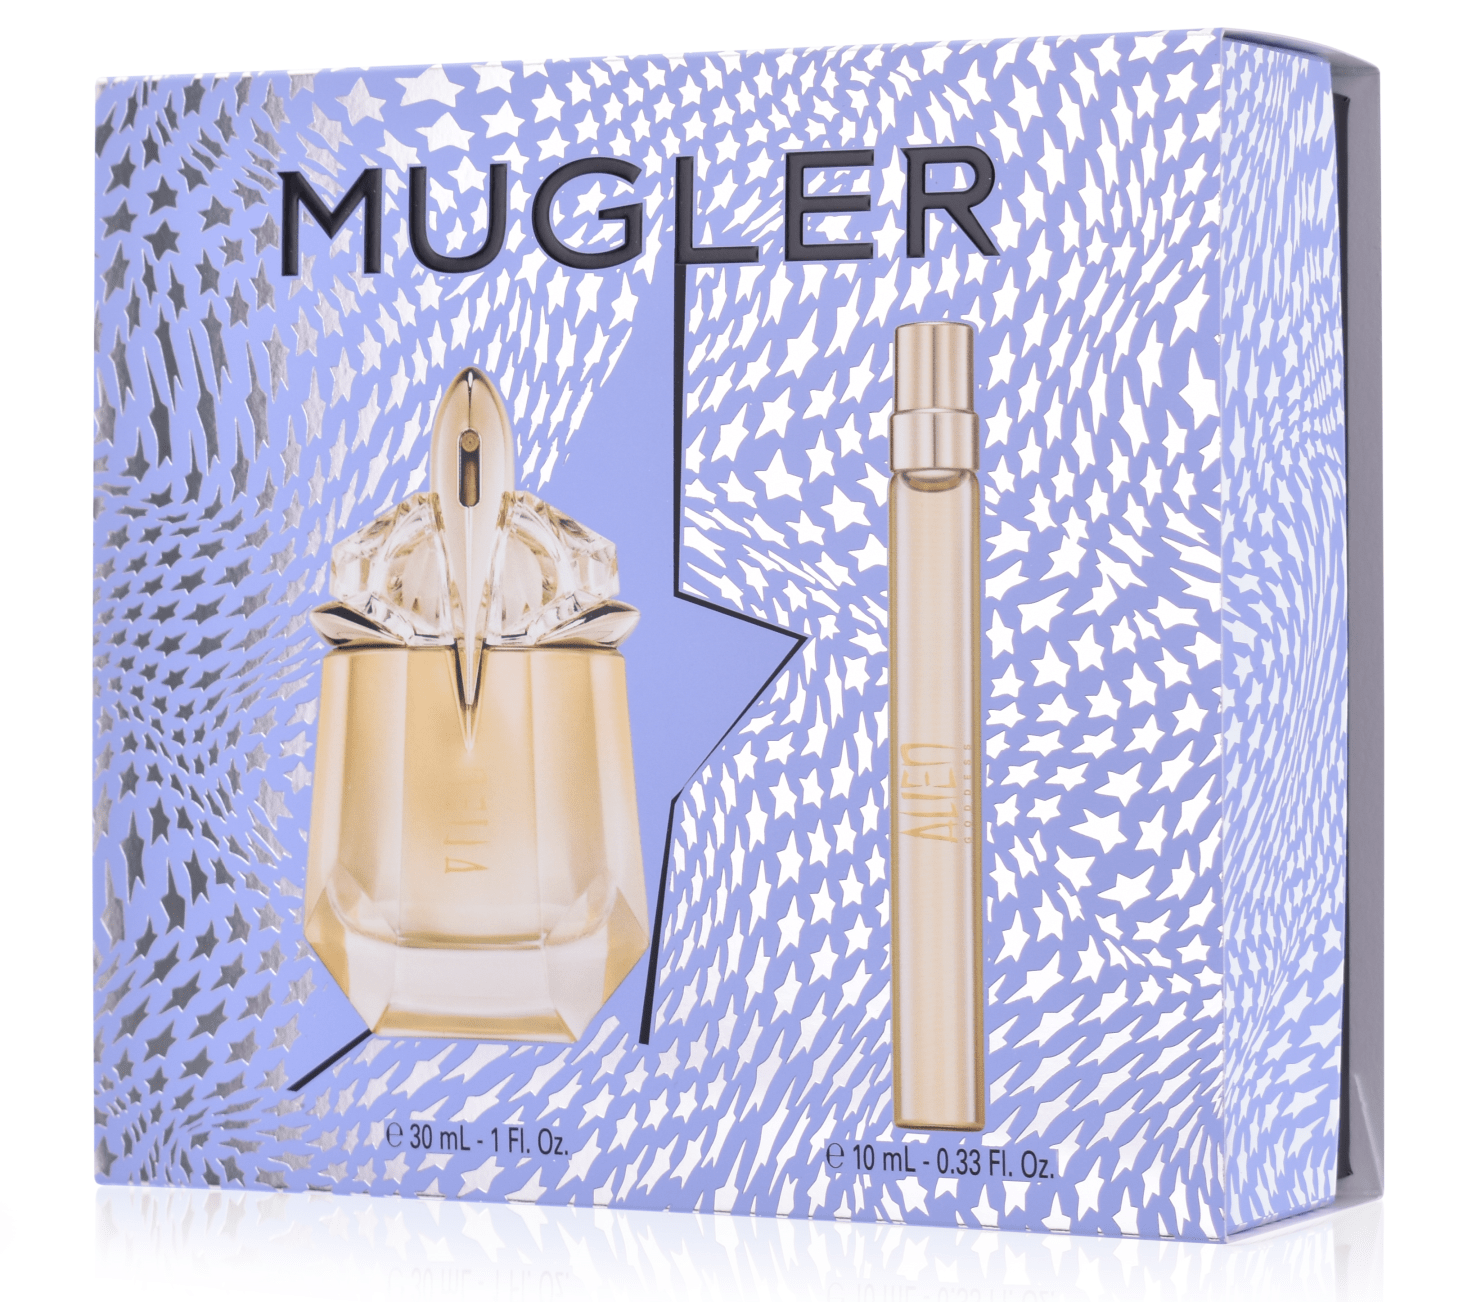 Thierry Mugler Alien Goddess 30 ml Eau de Parfum + 10 ml Eau de Parfum 